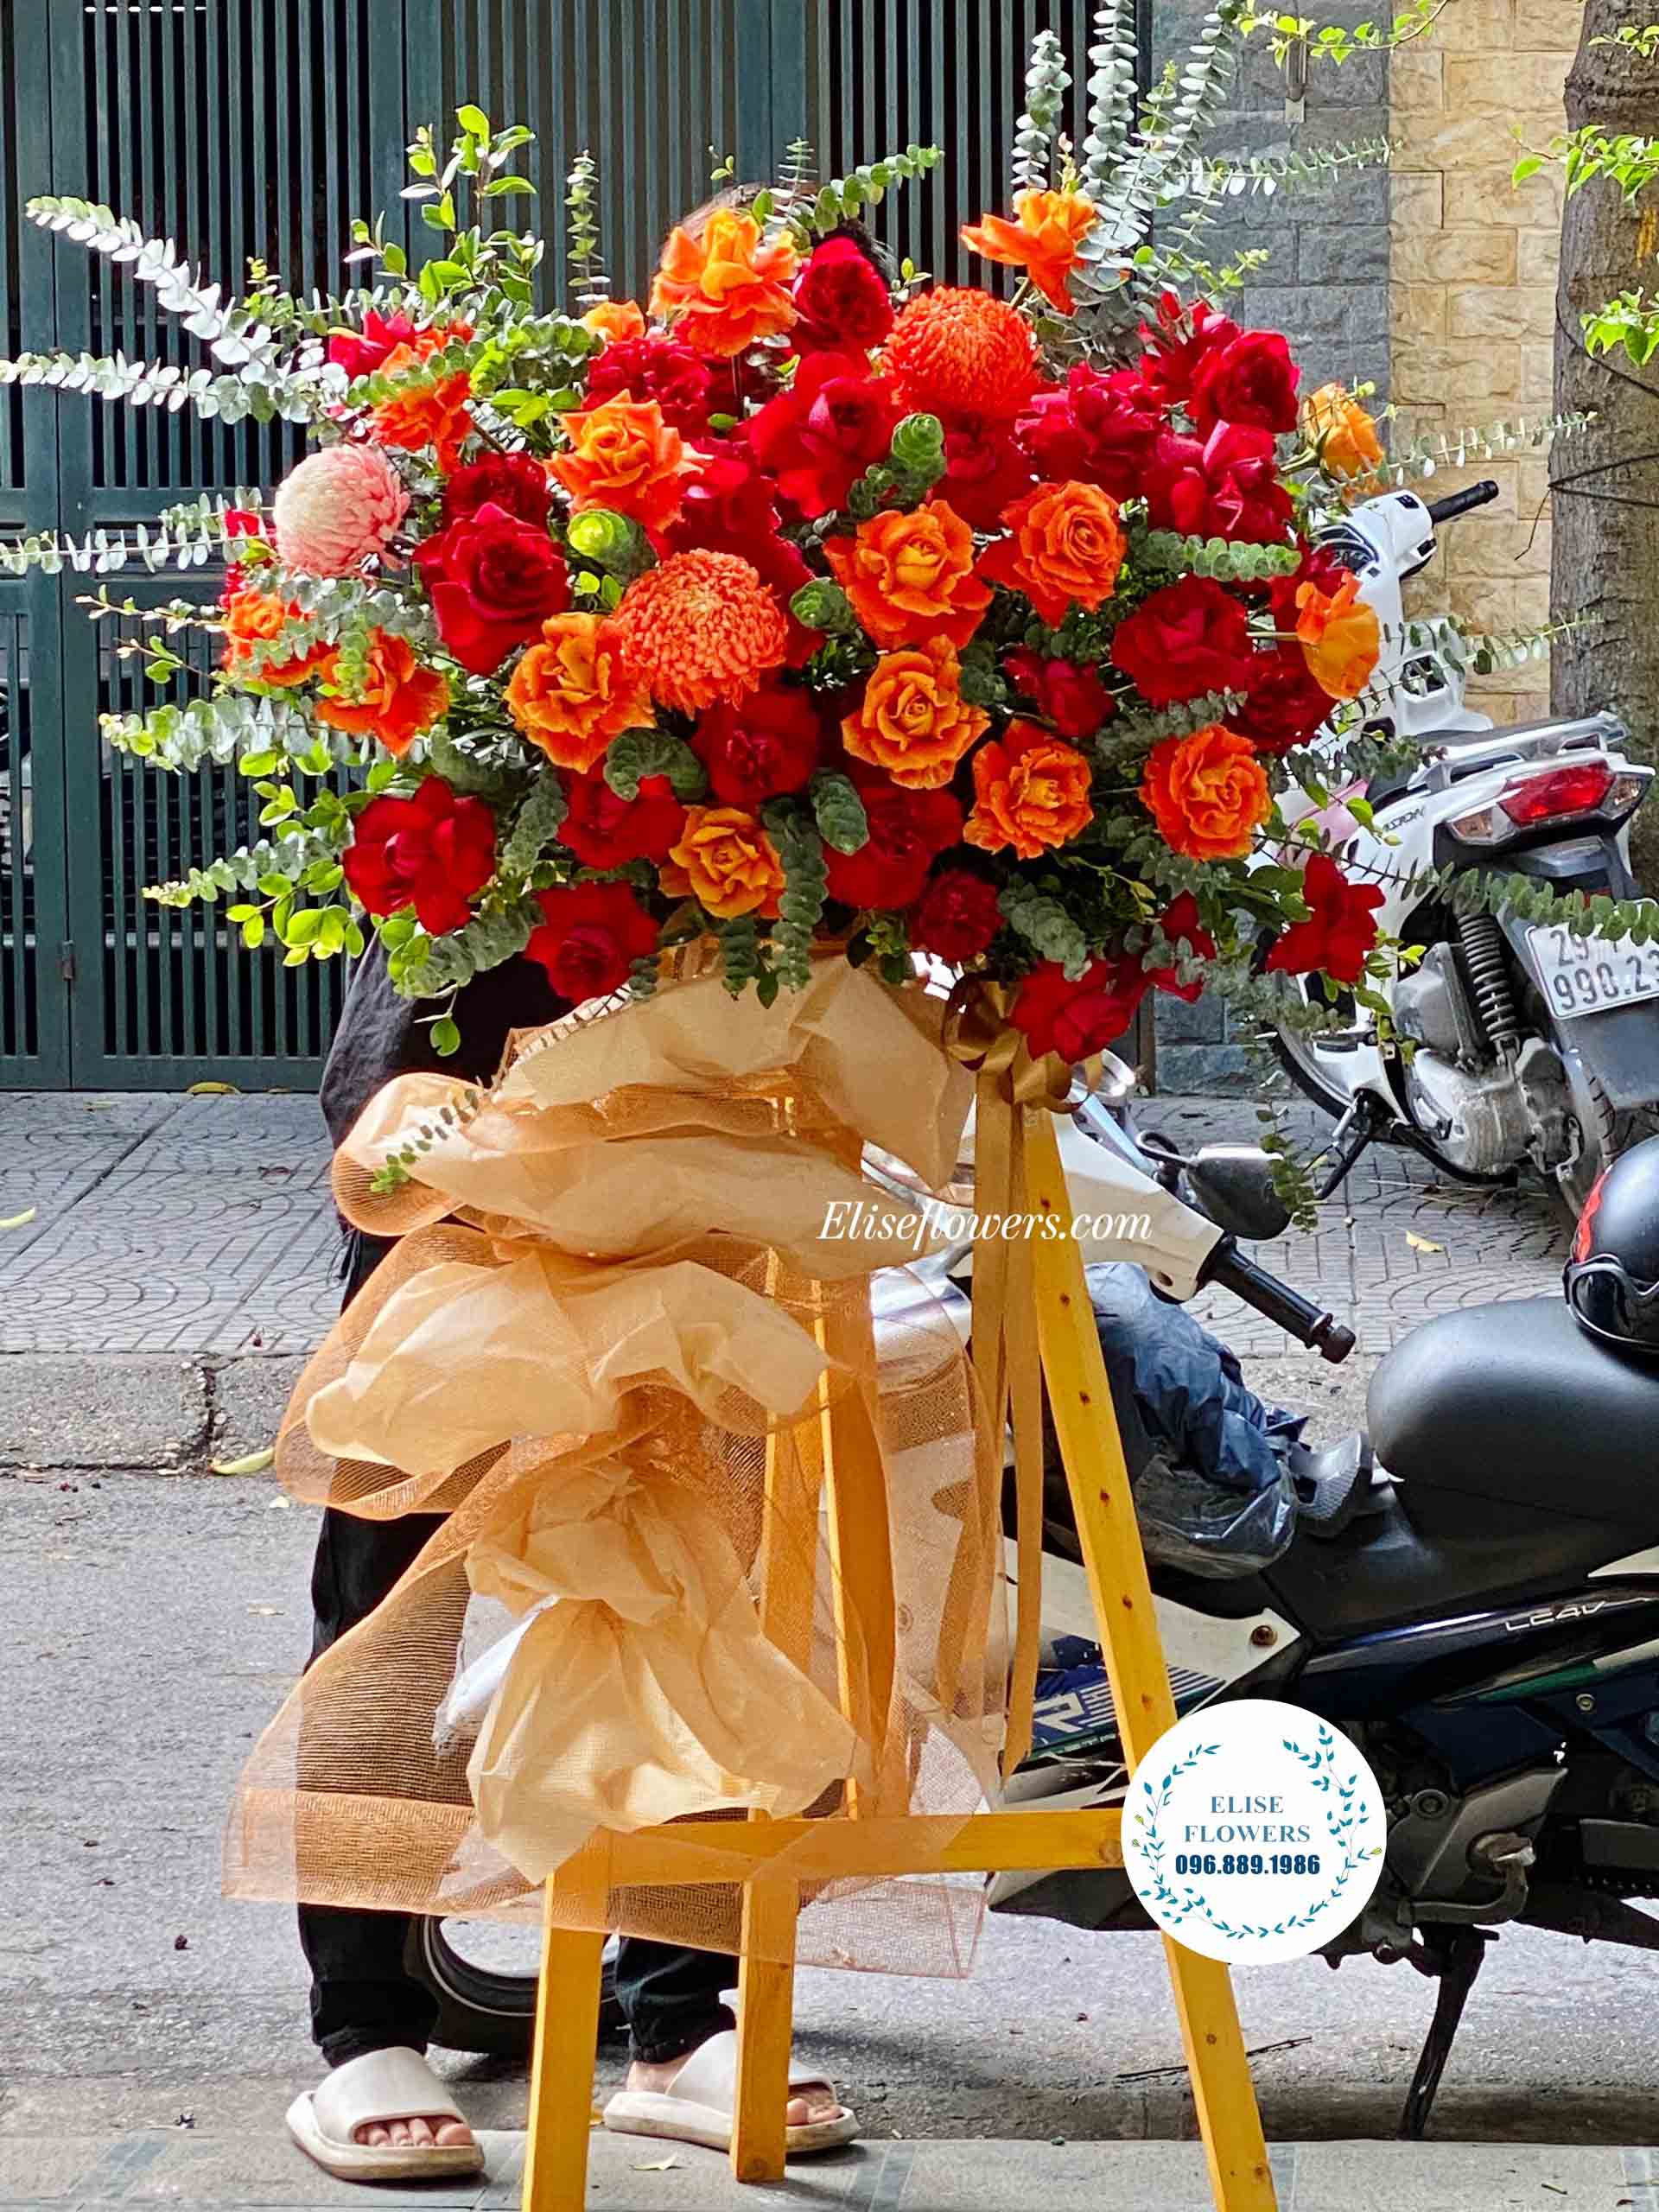 LẴNG HOA ĐẸP | Lẵng hoa chúc mừng sự kiện cuối năm | Lẵng hoa mừng lễ tổng kết công ty đẹp tại quận Ba Đình